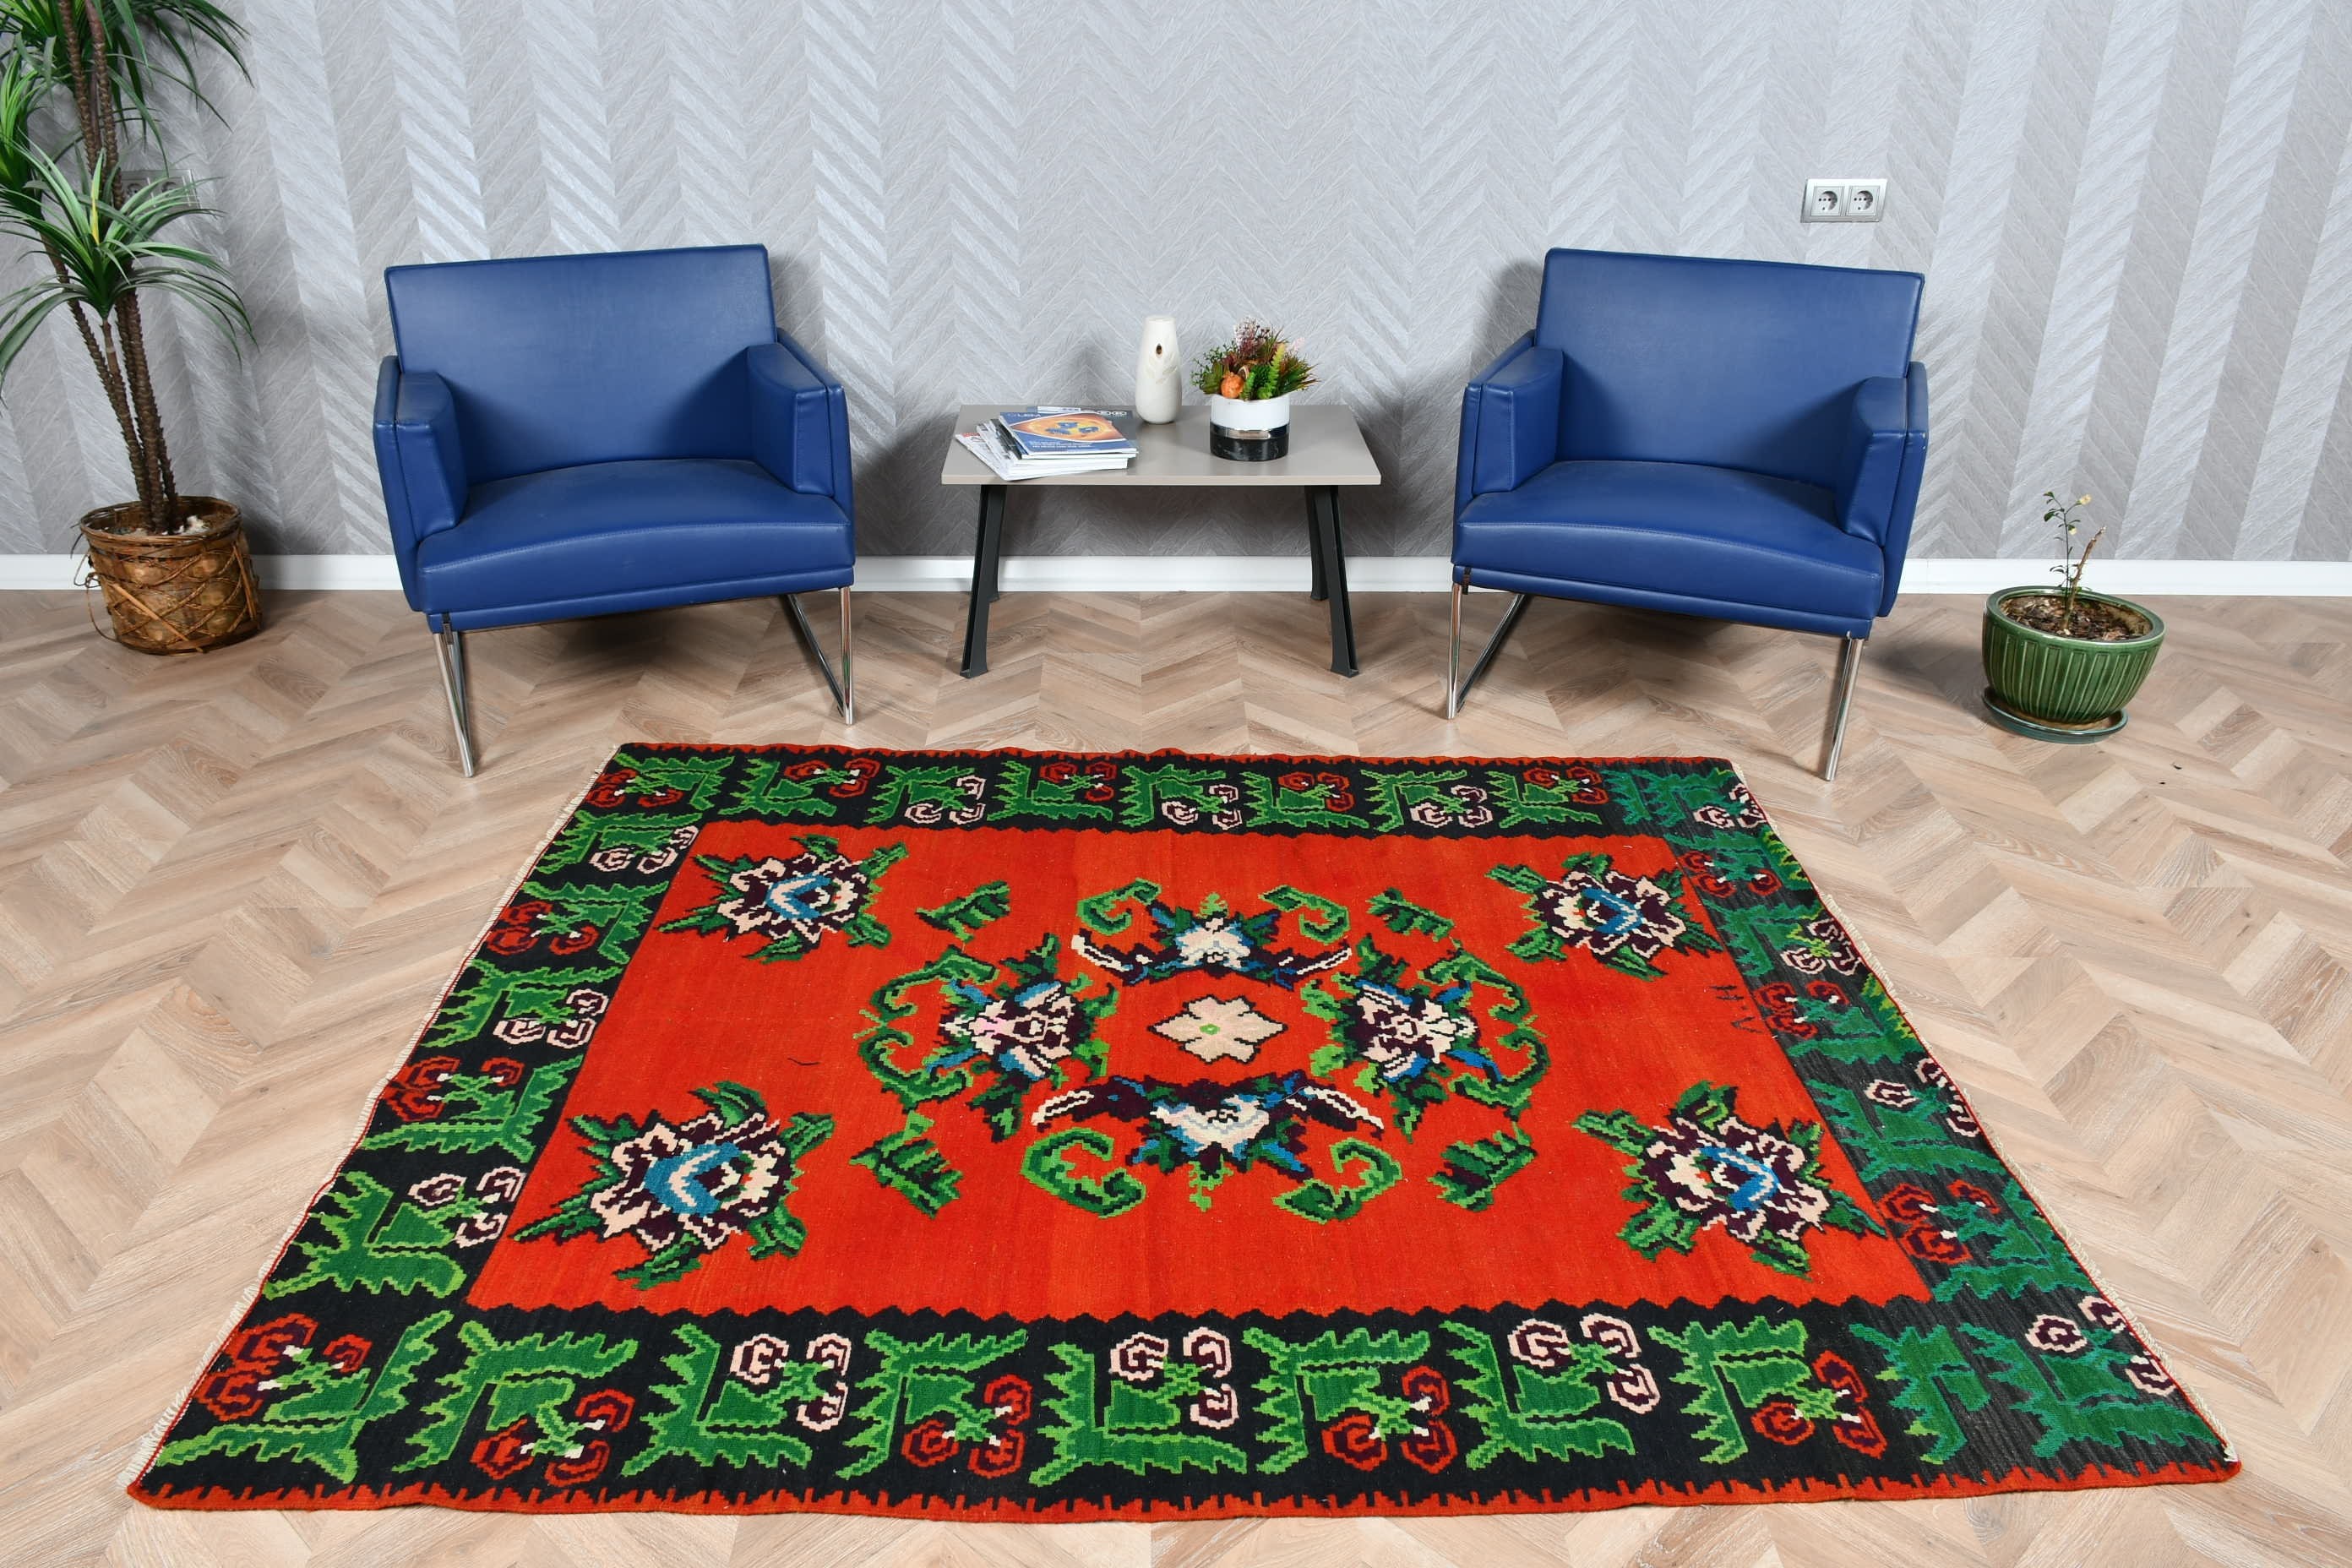 Turkish Rugs, Kitchen Rug, Nursery Rugs, Moroccan Rugs, Red Bedroom Rugs, Vintage Rugs, Living Room Rugs, Kilim, 5.3x6.5 ft Area Rug